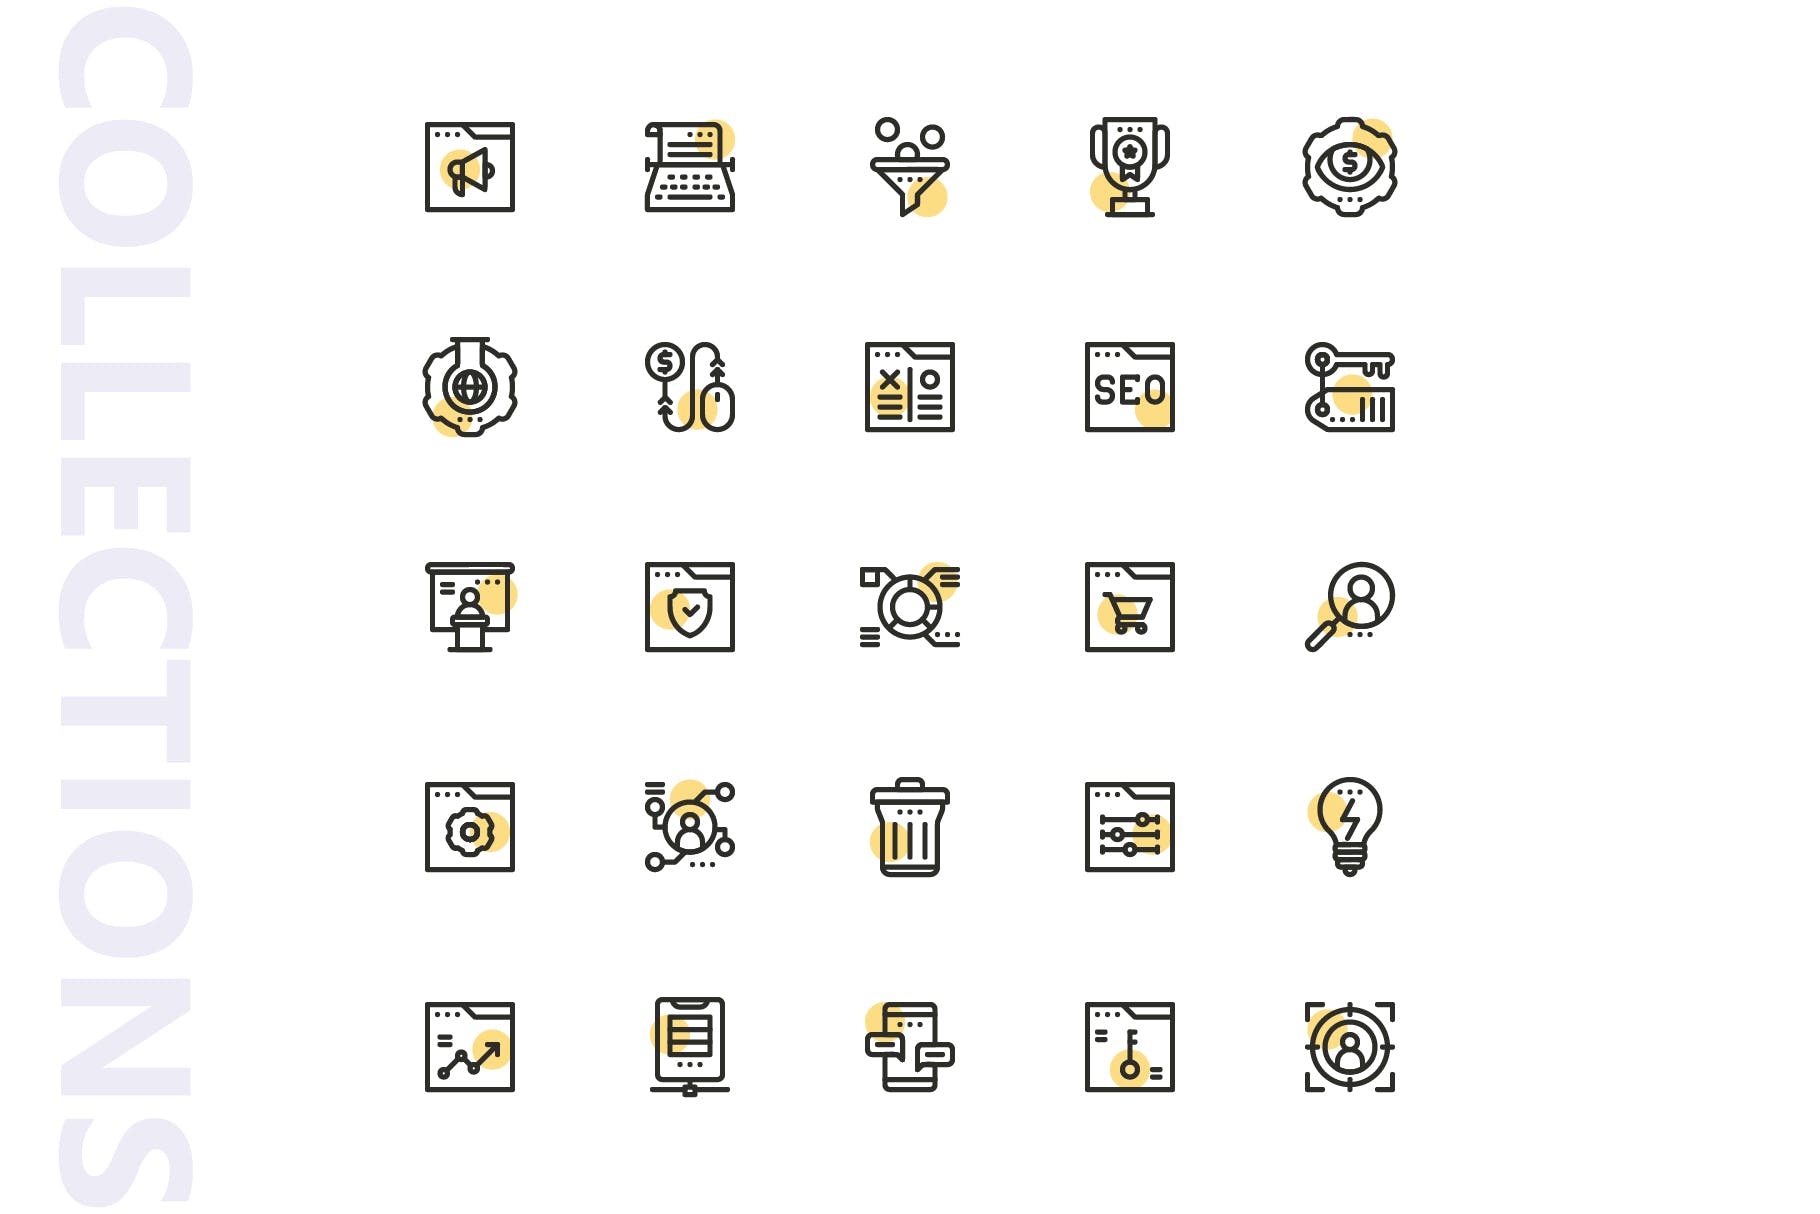 25枚SEO搜索引擎优化营销矢量圆点装饰蚂蚁素材精选图标v2 SEO Marketing Shape Icons插图(3)